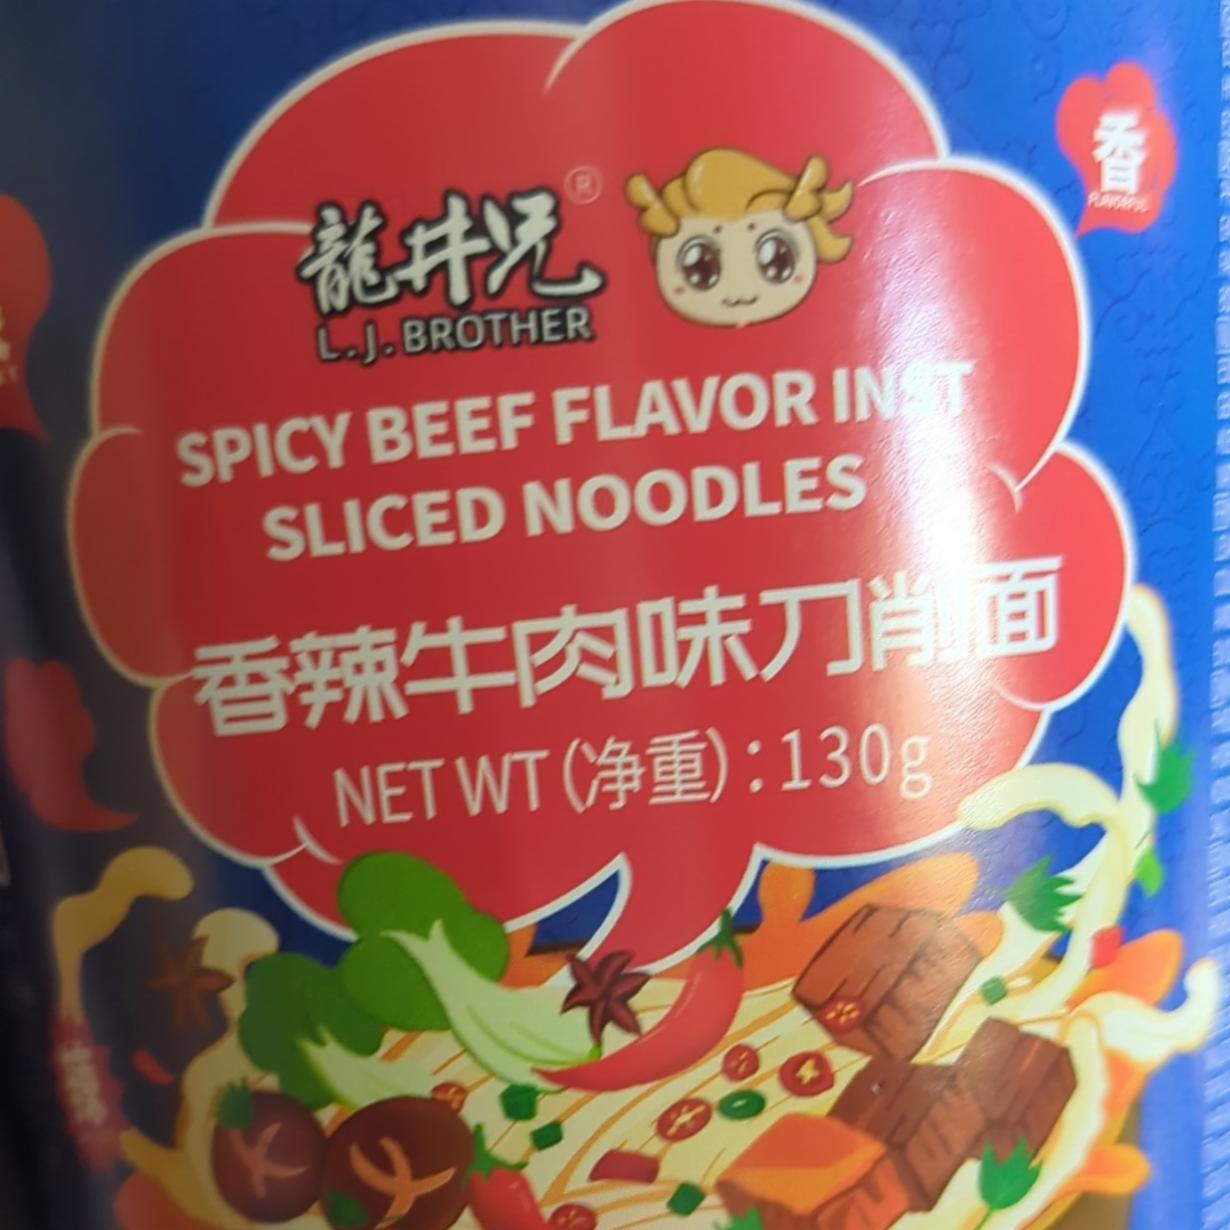 Képek - Spicy beef flavor inst sliced noodles L.J Brother